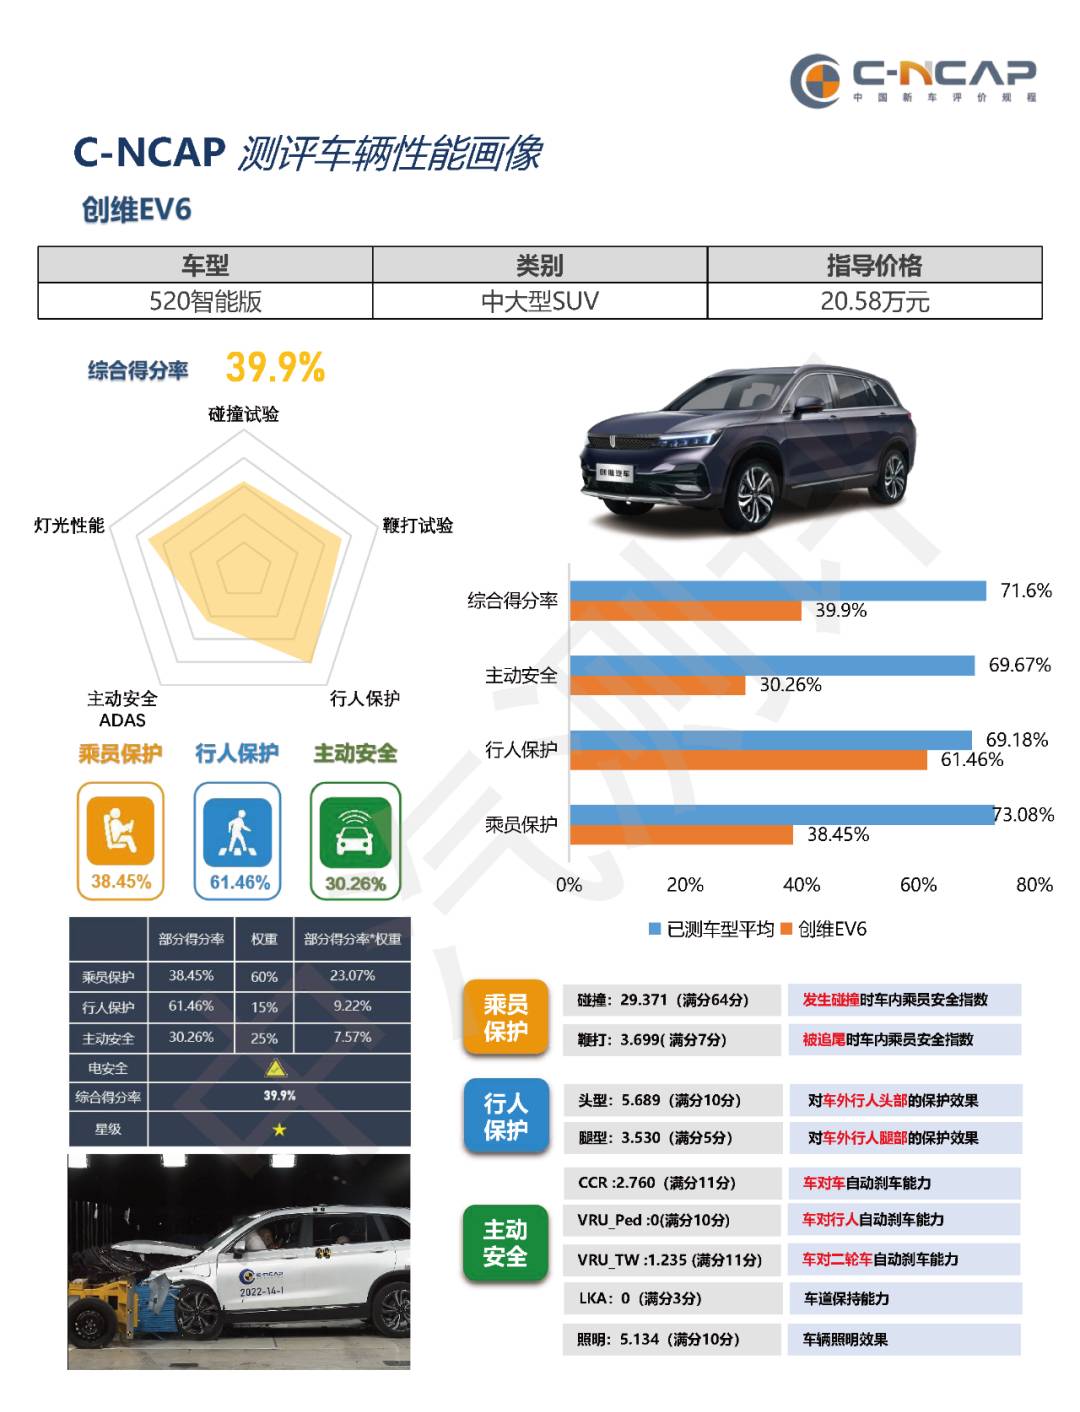 cw3 - Tesla non compenserà i proprietari di auto per la “giusta protezione” / Auto Xiaomi o a partire da 260.000 yuan / Il sito Web ufficiale di GAC Acura non è più accessibile